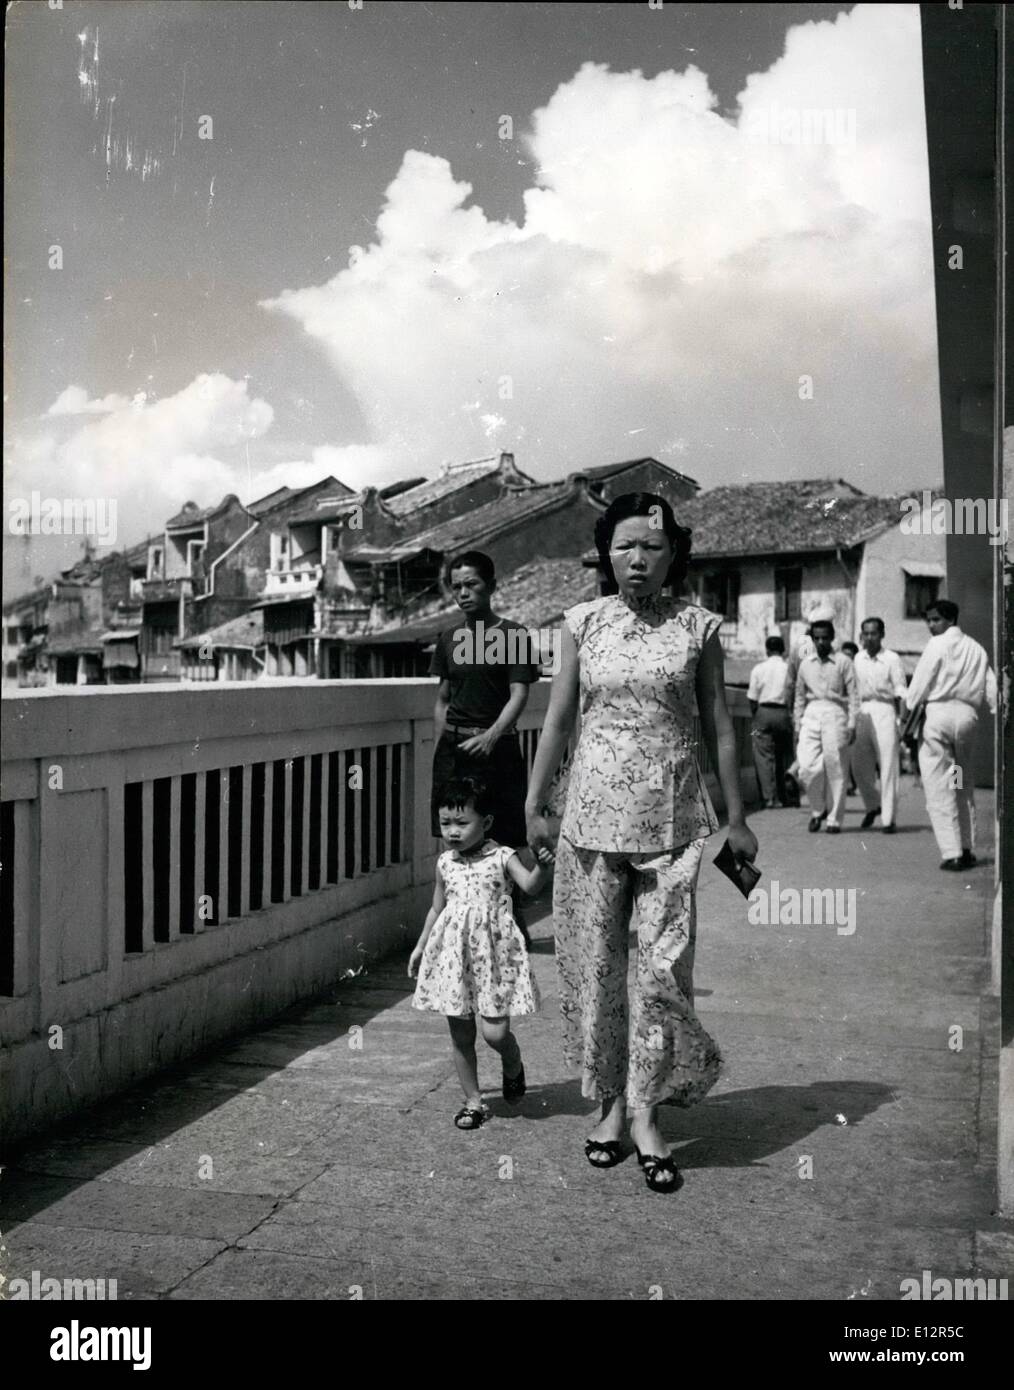 25 février 2012 - Changement de la mode féminine à Singapour : la plupart des femmes plus jeunes à Singapour comme à s'habiller dans le style occidental. D'autres compromis en portant le ''shong-sam'', une robe moulant avec un côté fendu jusqu'à la cuisse sur les deux côtés. Les femmes plus âgées à conserver la tunique chinoise et d'une presse à pantalons comme cette femme. L'enfant est habillé de façon normale à l'Ouest Banque D'Images